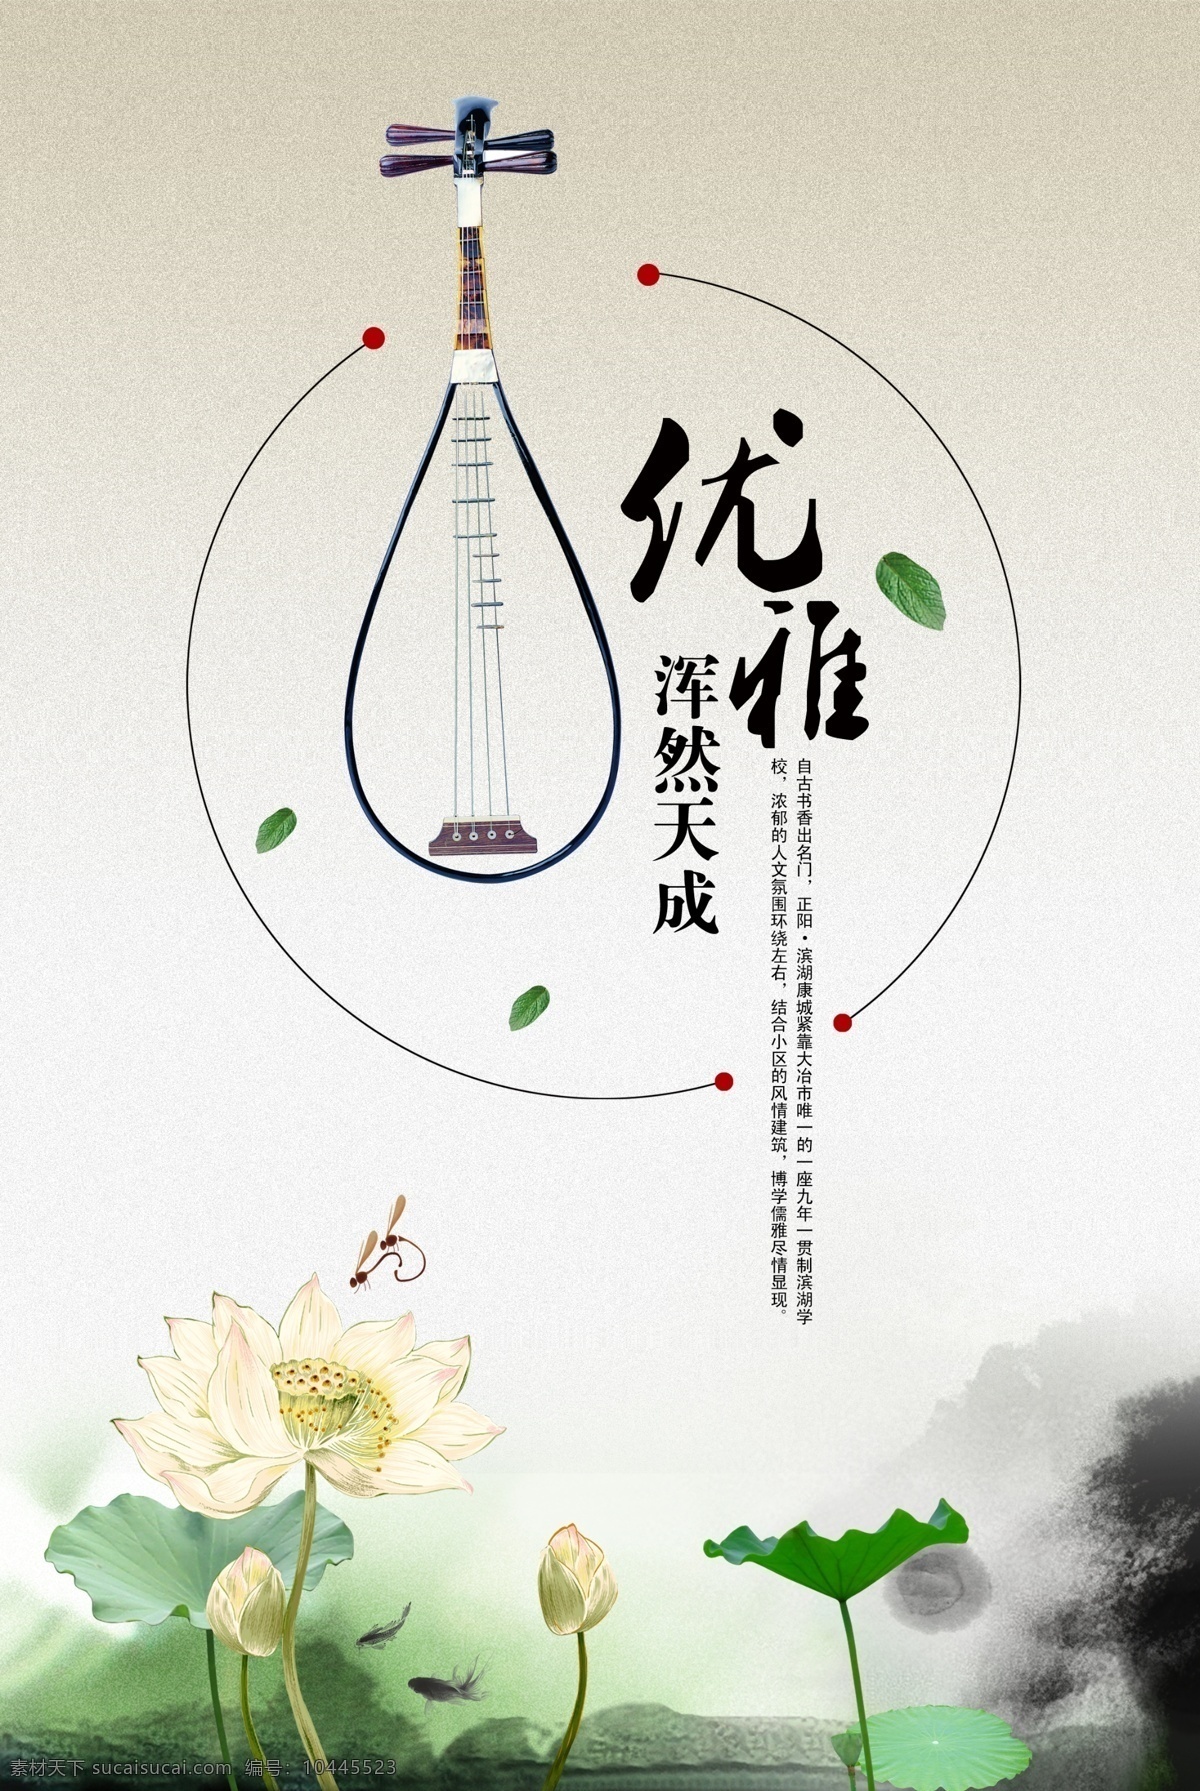 中国风素材 中国风海报 中国风 琵琶 浑然天成 荷花荷叶 水墨 中国文化 文化艺术